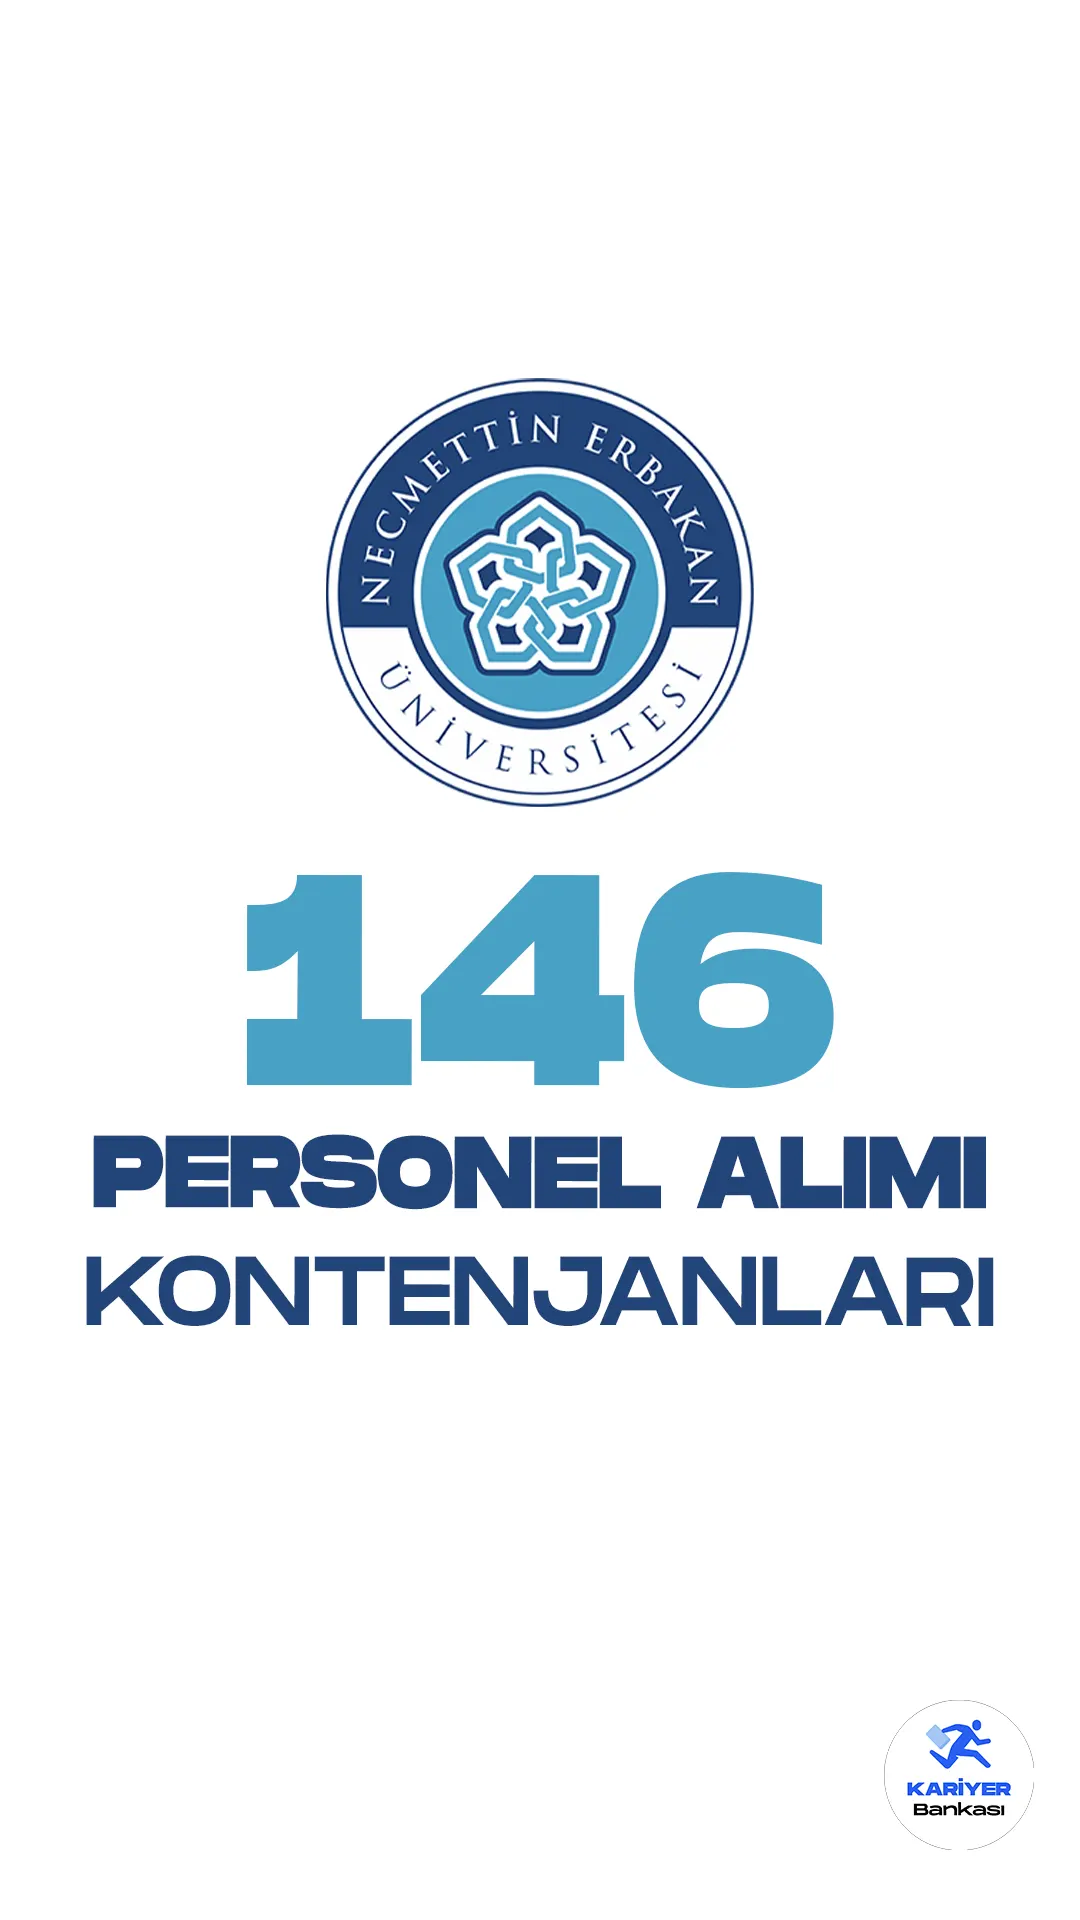 Necmettin Erbakan Üniversitesi 146 personel alımı başvuru işlemleri devam ediyor. Kontenjan dağılımı ve başvuru şartlarına dair tüm detaylar bu haberimizde.